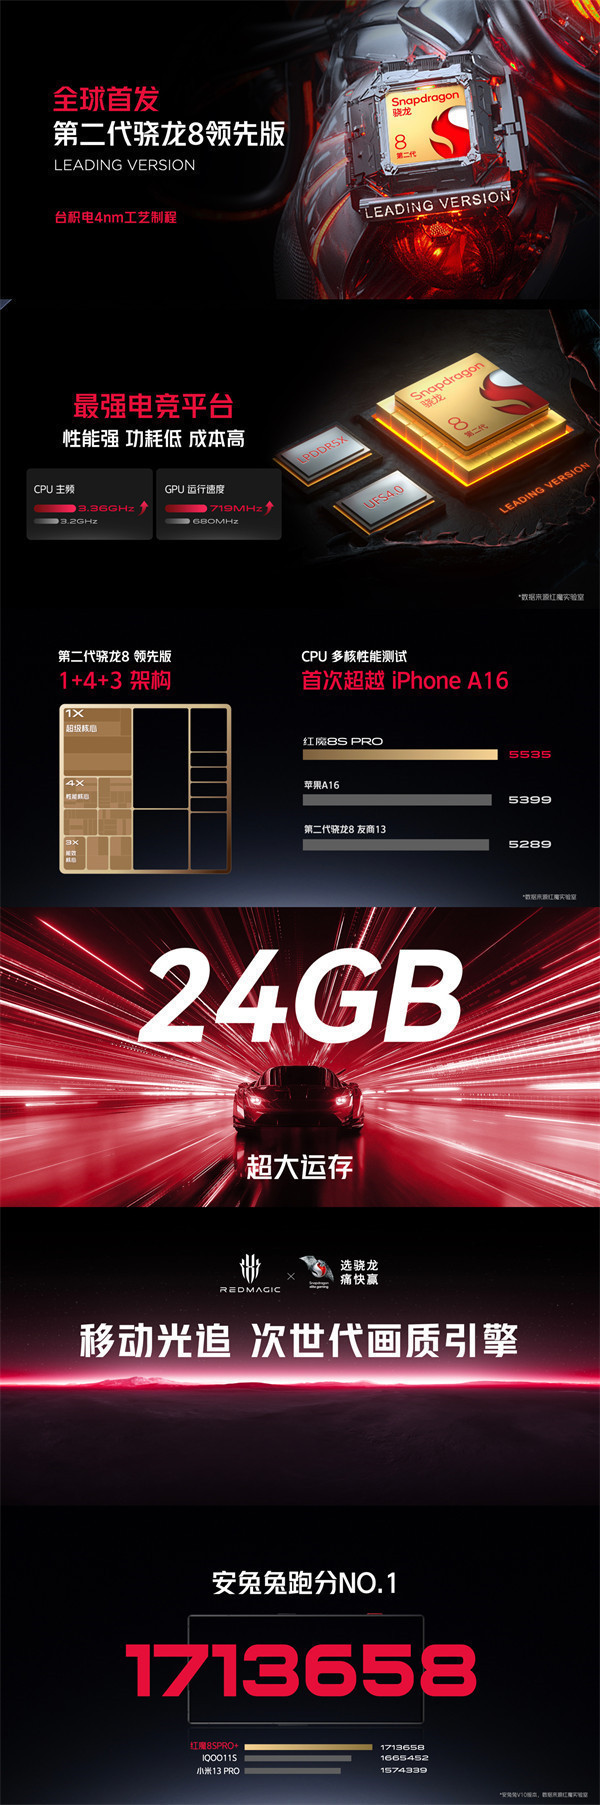 红魔 8S Pro系列手机发布，售价 3999 元起